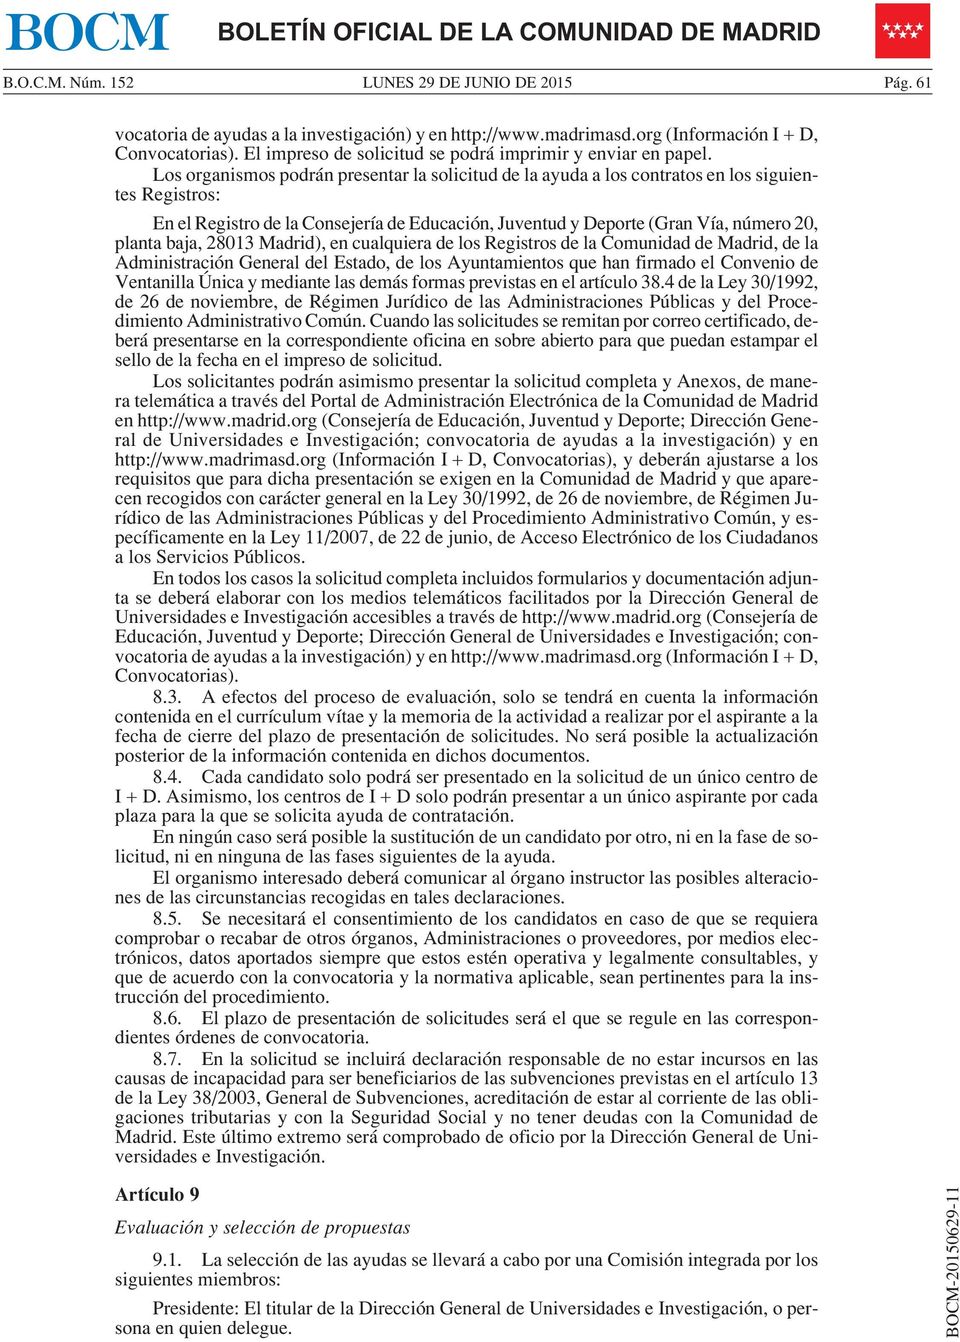 baja, 28013 Madrid), en cualquiera de los Registros de la Comunidad de Madrid, de la Administración General del Estado, de los Ayuntamientos que han firmado el Convenio de Ventanilla Única y mediante